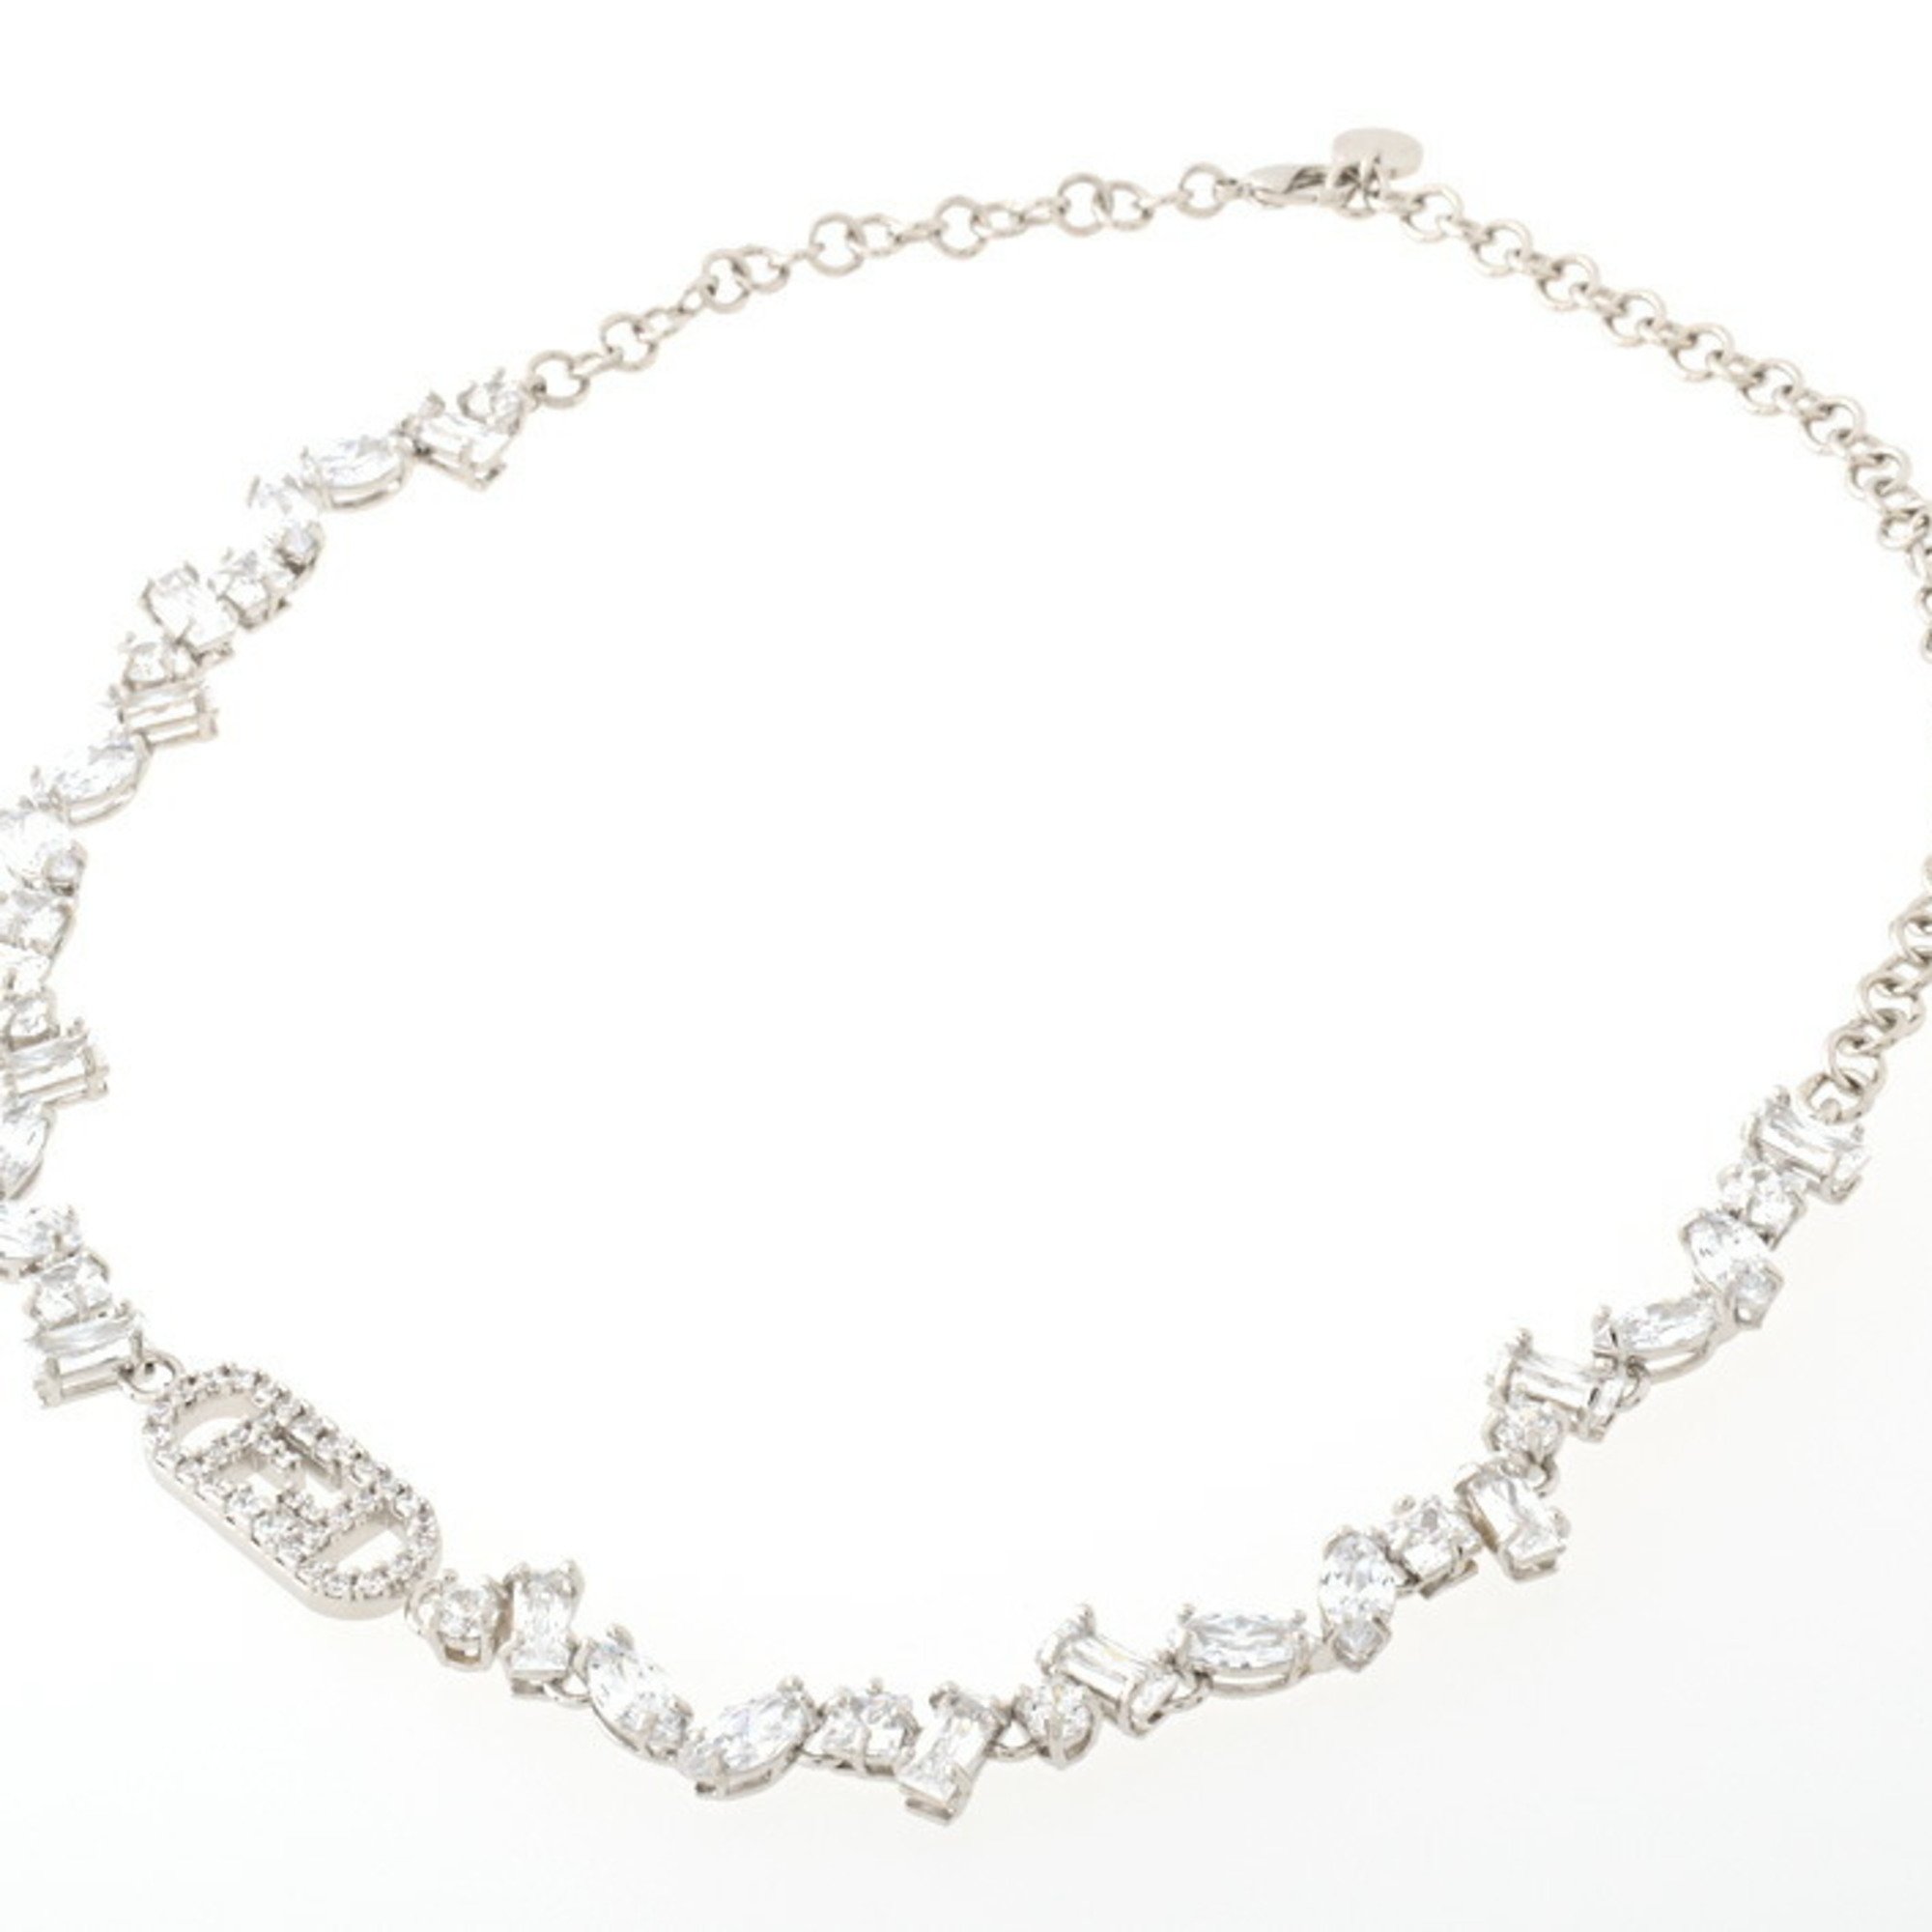 Fendi auroch crystal necklace itepa6our17g